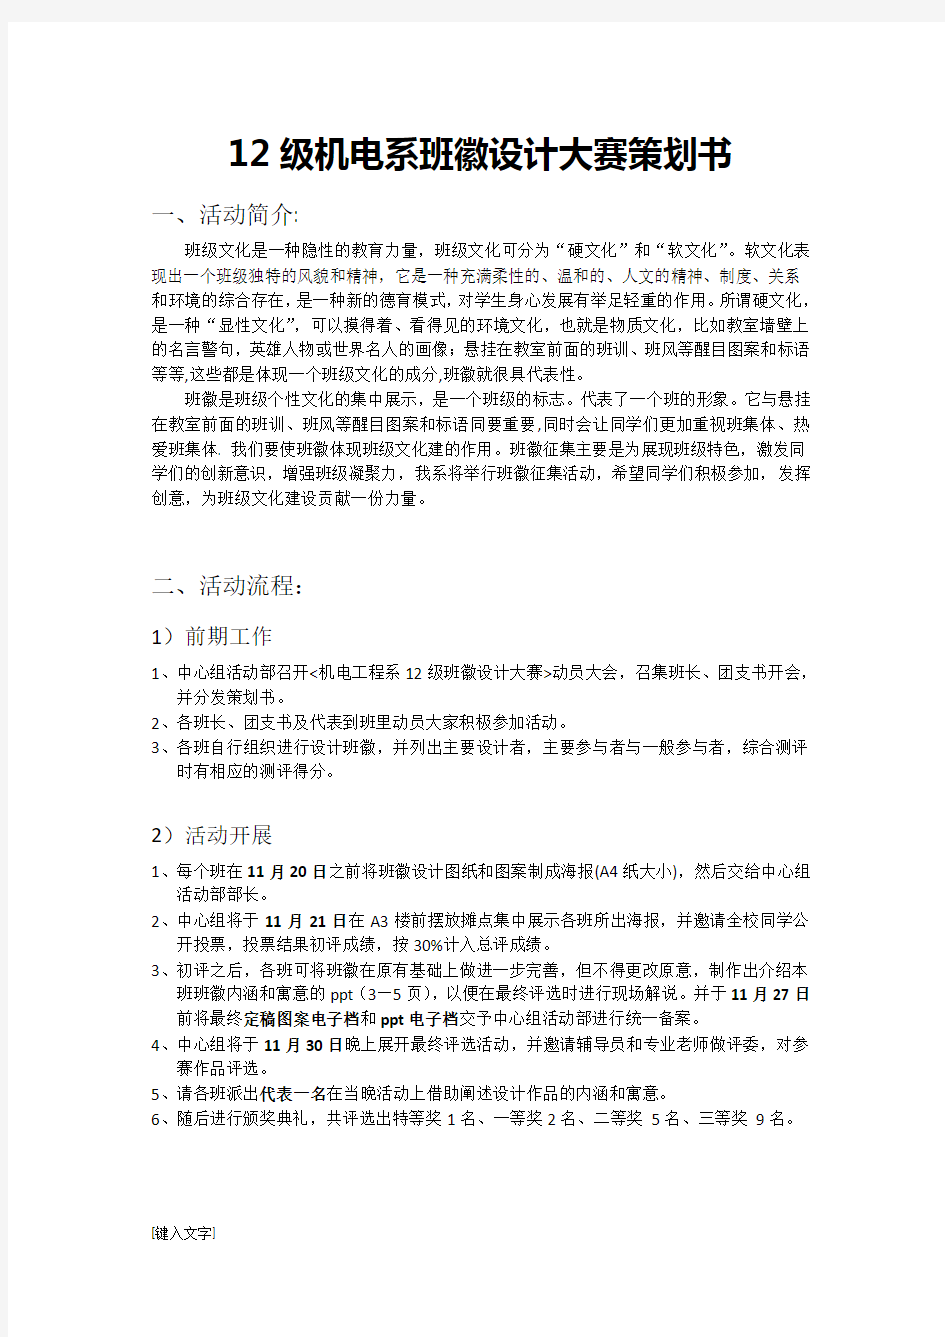 南京航空航天大学金城学院机电工程系班徽设计大赛策划书 (宣传版)